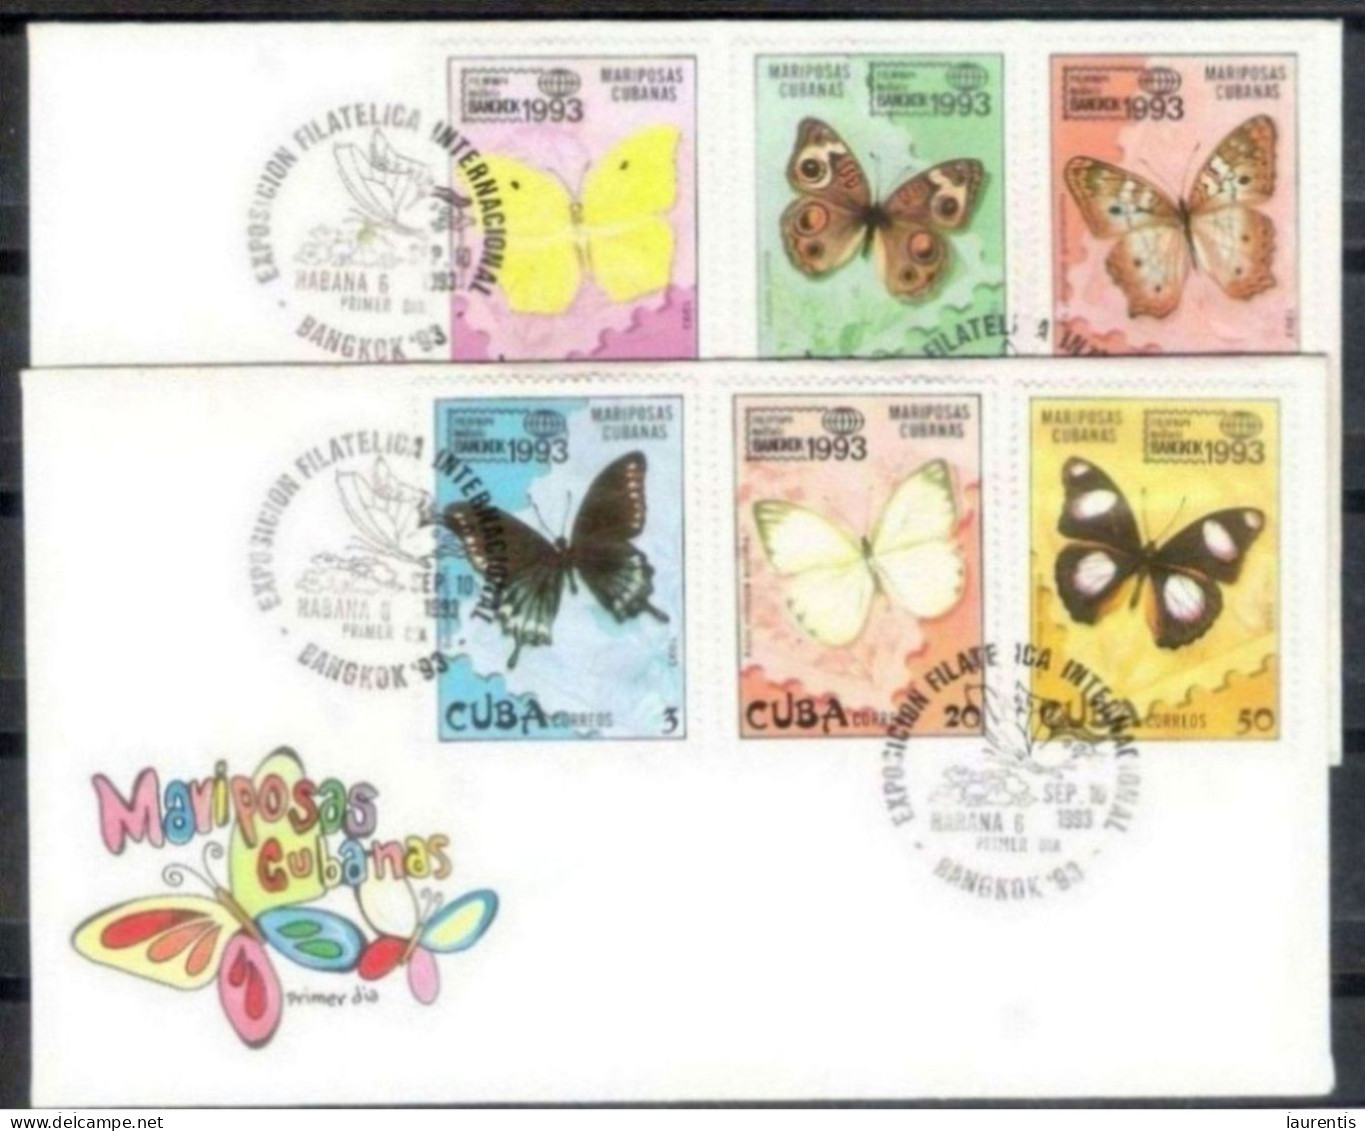 783  Butterflies - Papillons -  1993 FDC -  Cb - 3,85 - Papillons